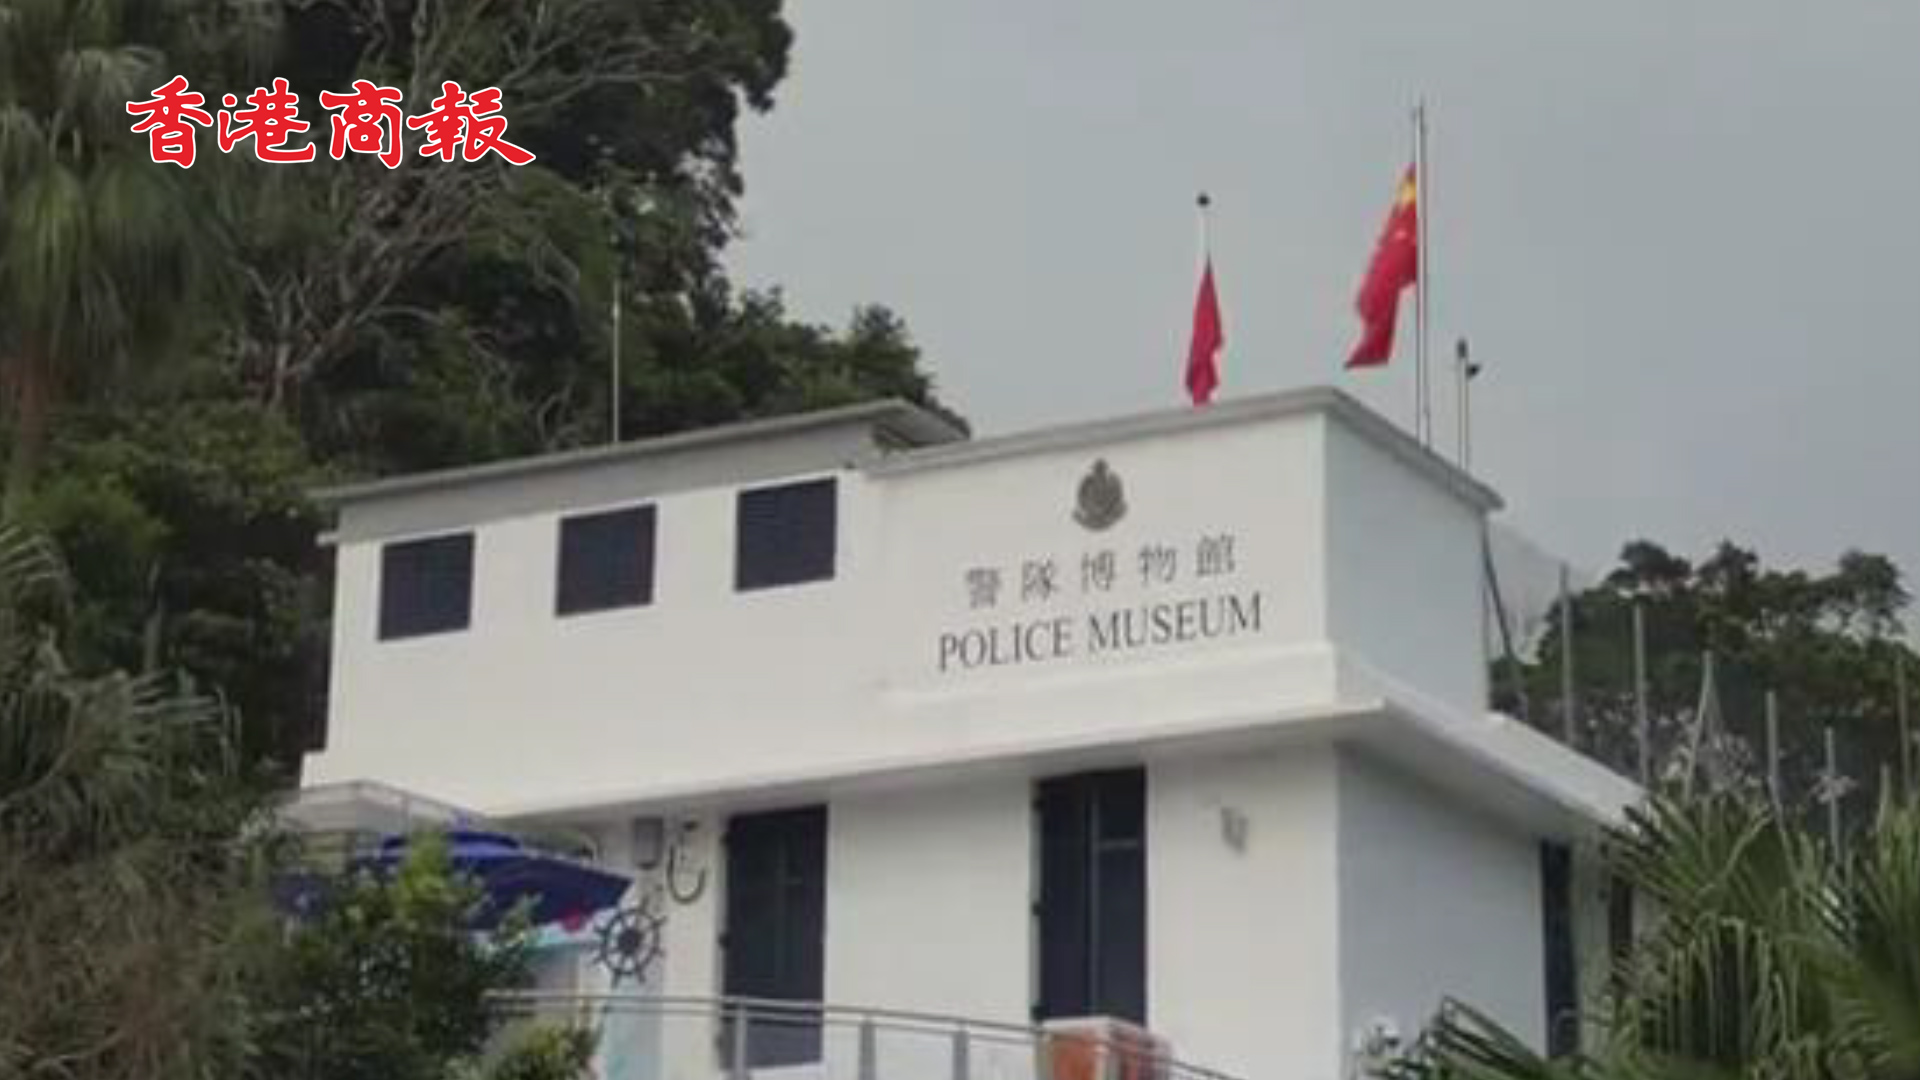 有片丨警隊博物館活化後正式重啟 帶你認識更多香港警隊的歷史及工作